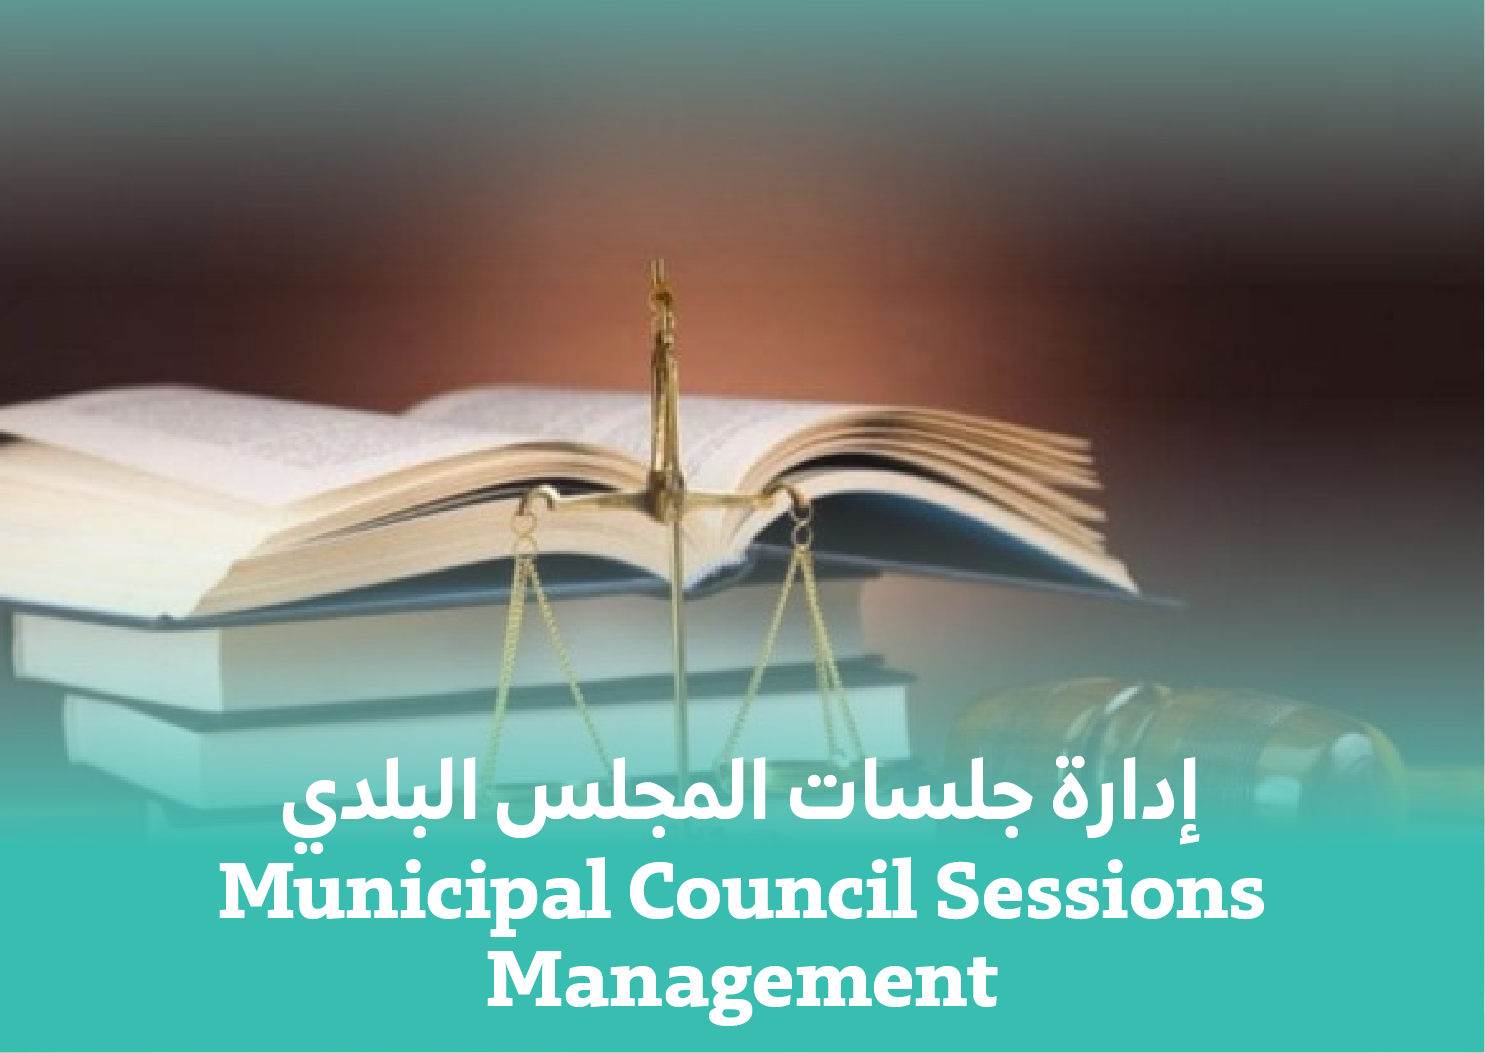 Municipal Council Sessions Management